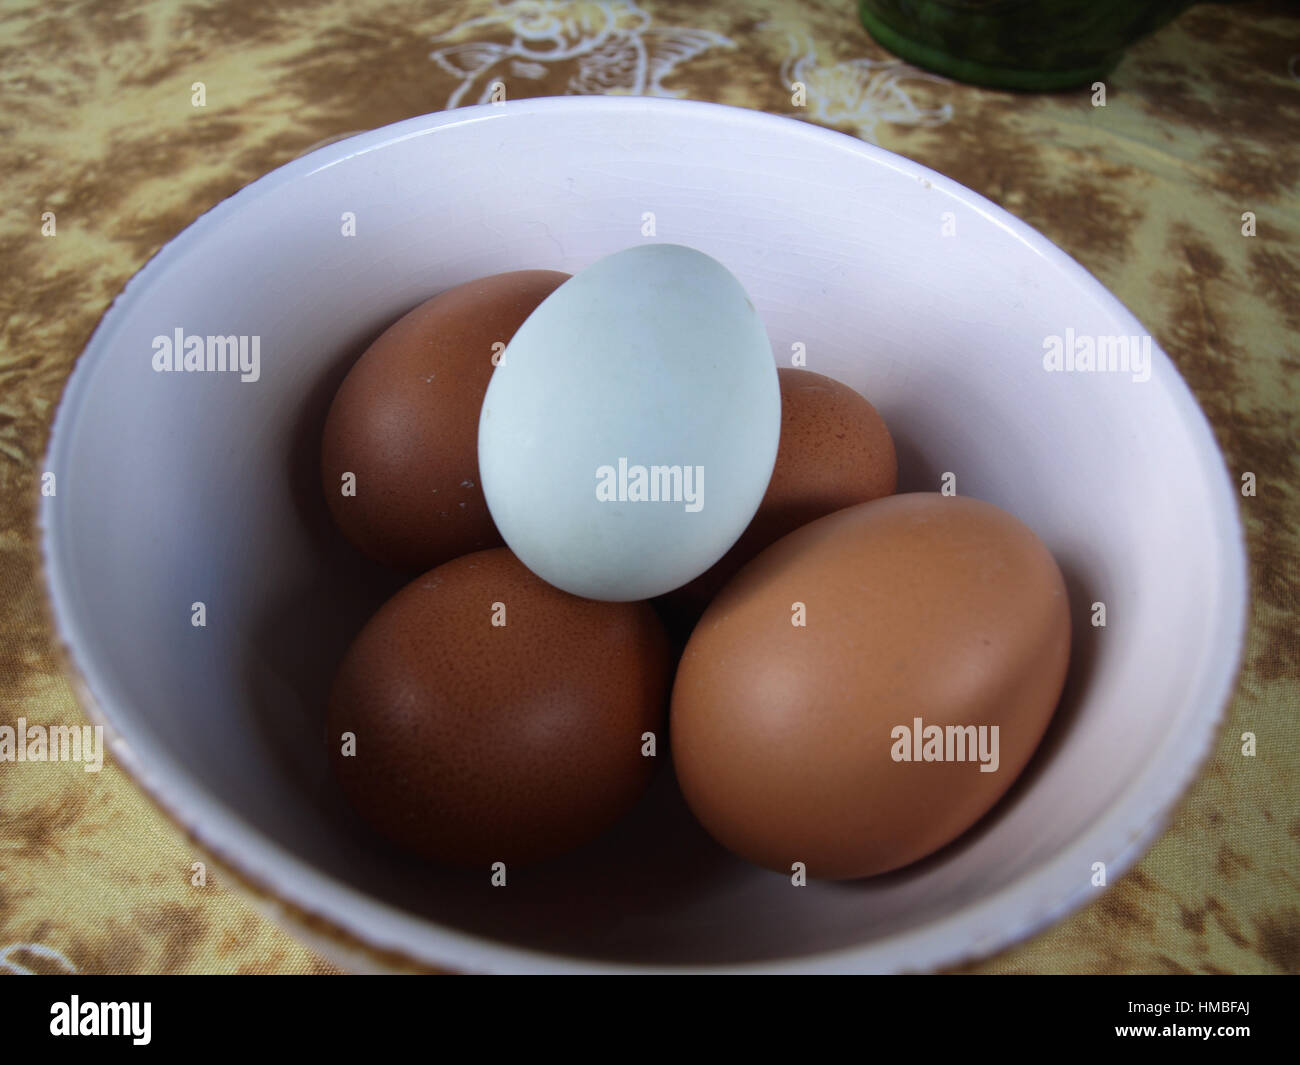 Intervallo libero e store hanno acquistato le uova in una terrina Foto Stock